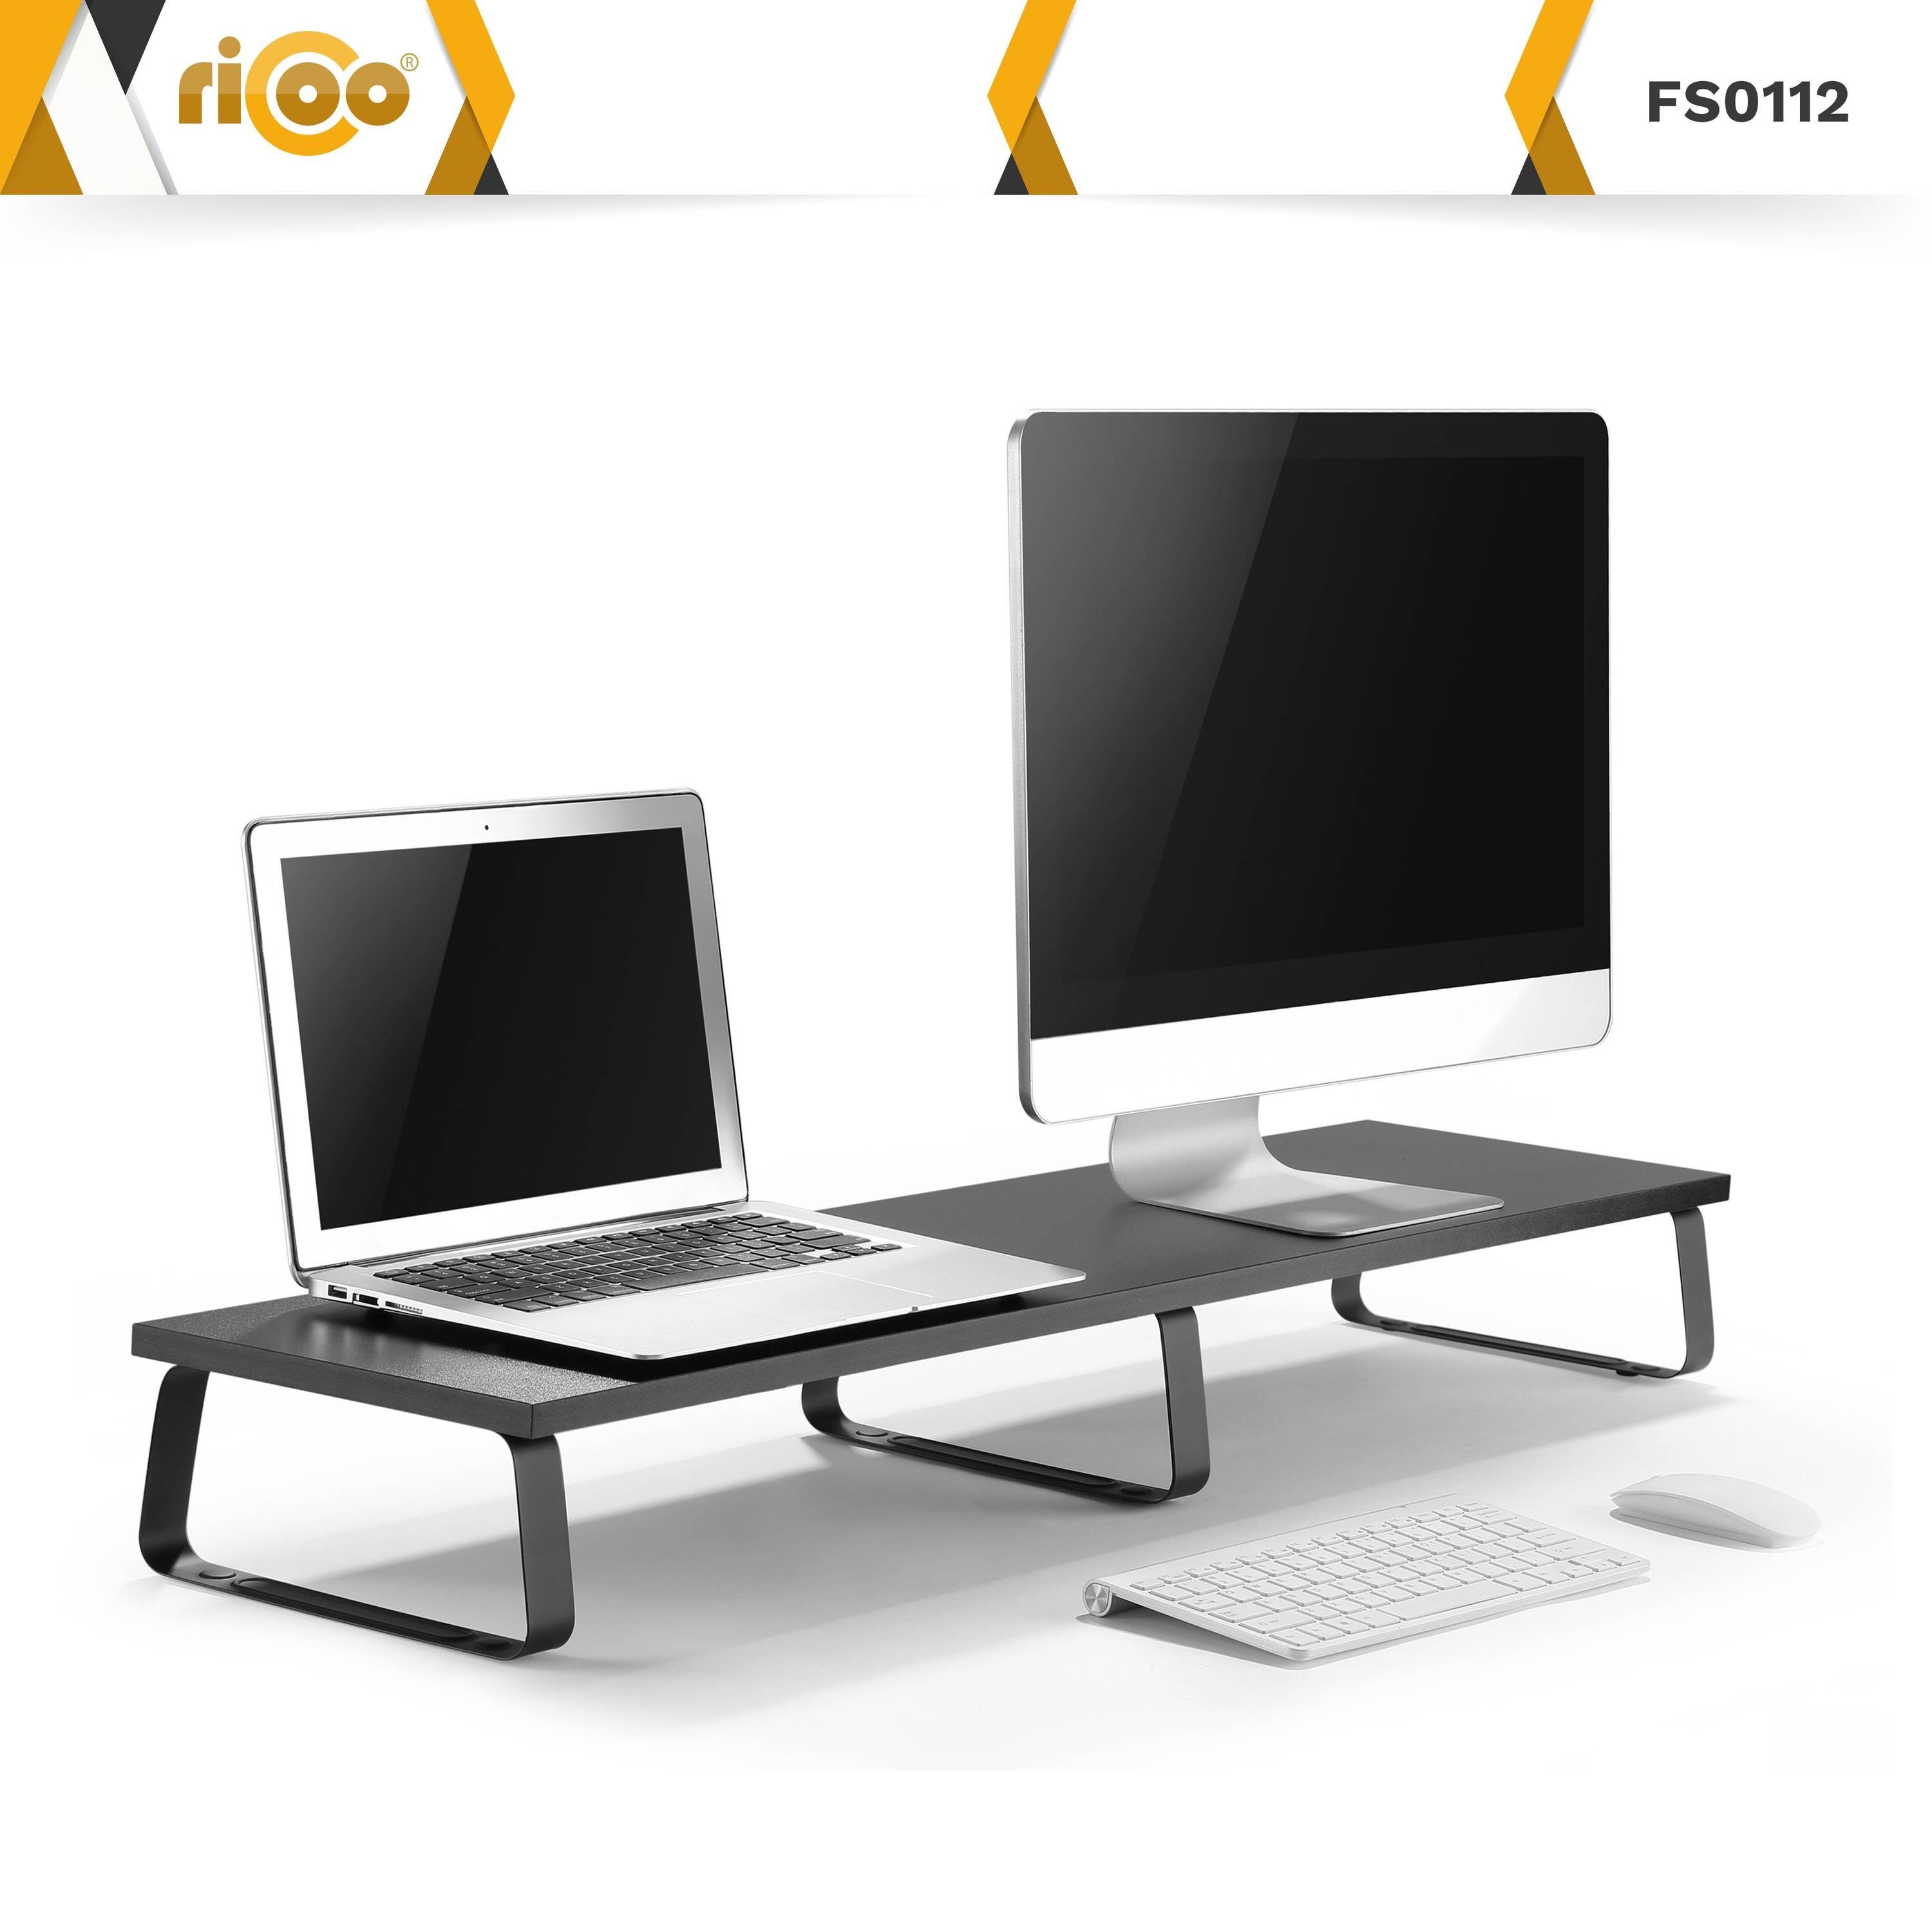 Monitorständer Bildschirm FS0112, RICOO Tisch Schreibtischaufsatz Schreibtisch Aufsatz Monitorerhöhung